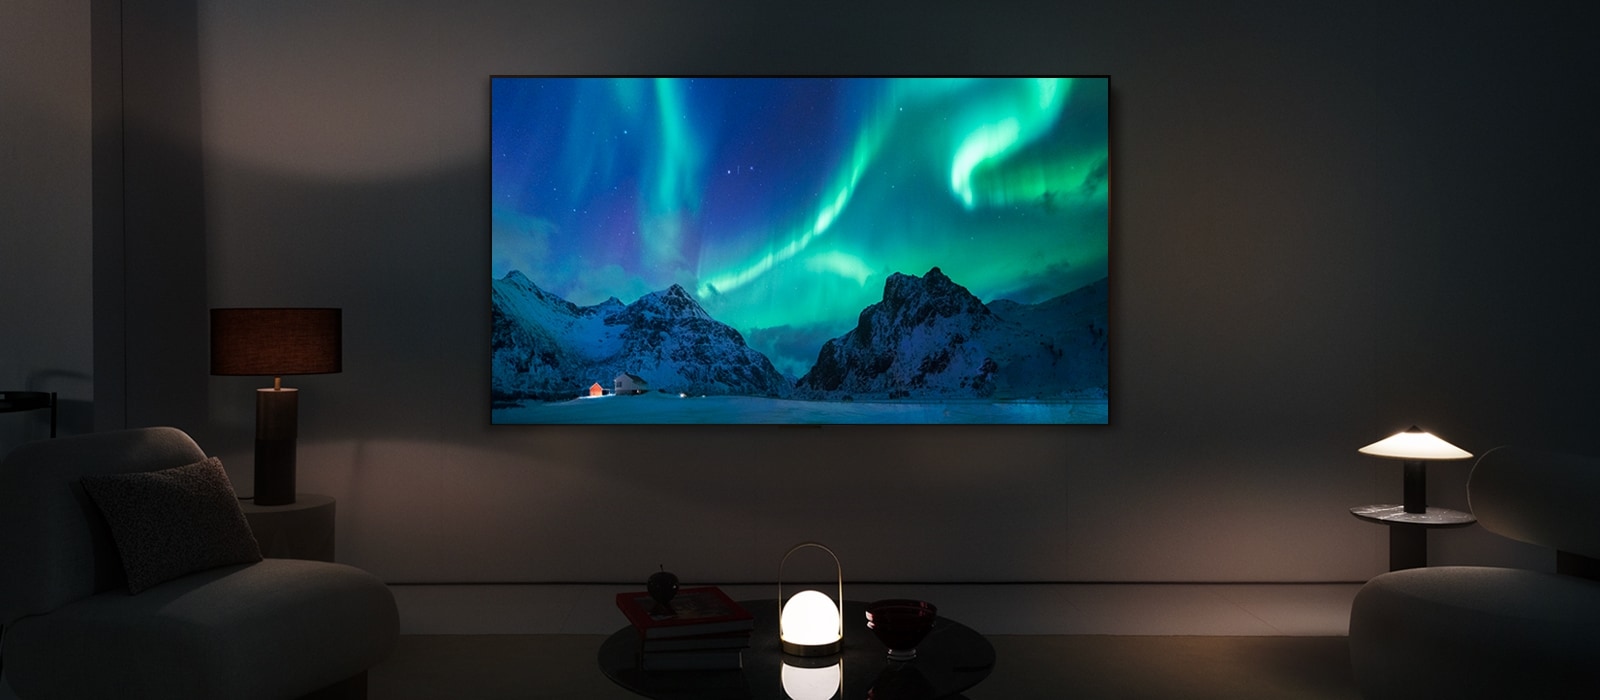 Un LG TV OLED dans un salon moderne pendant la nuit. L’écran affiche une image de l’aurore boréale avec une luminosité idéale.